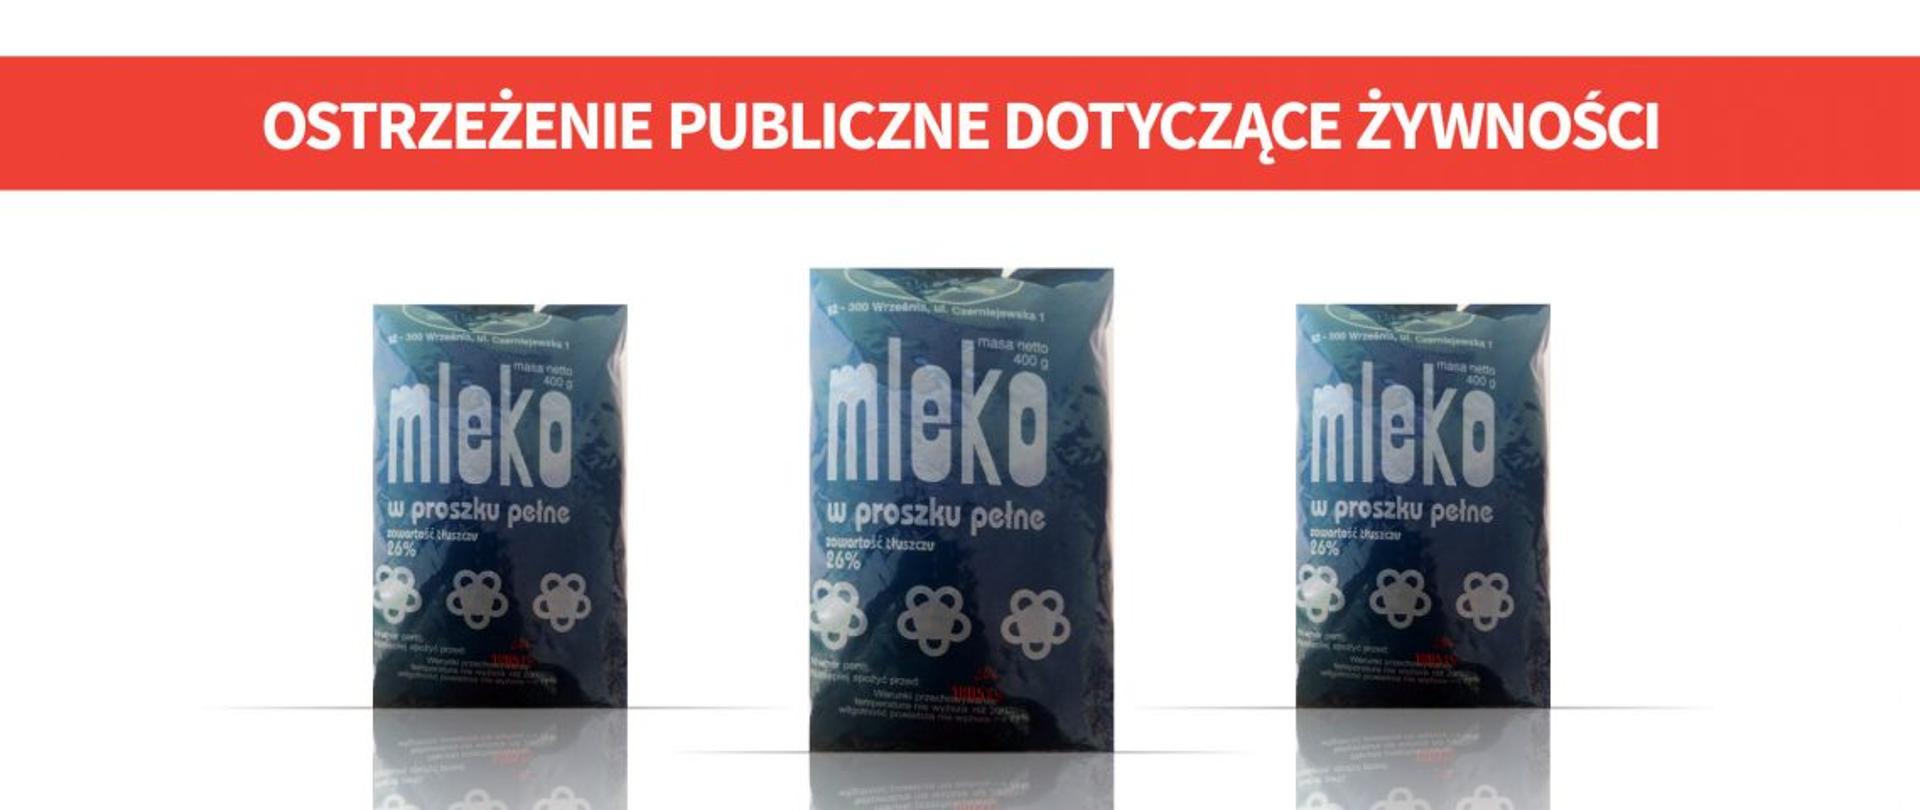 cover-mleko-1140x520